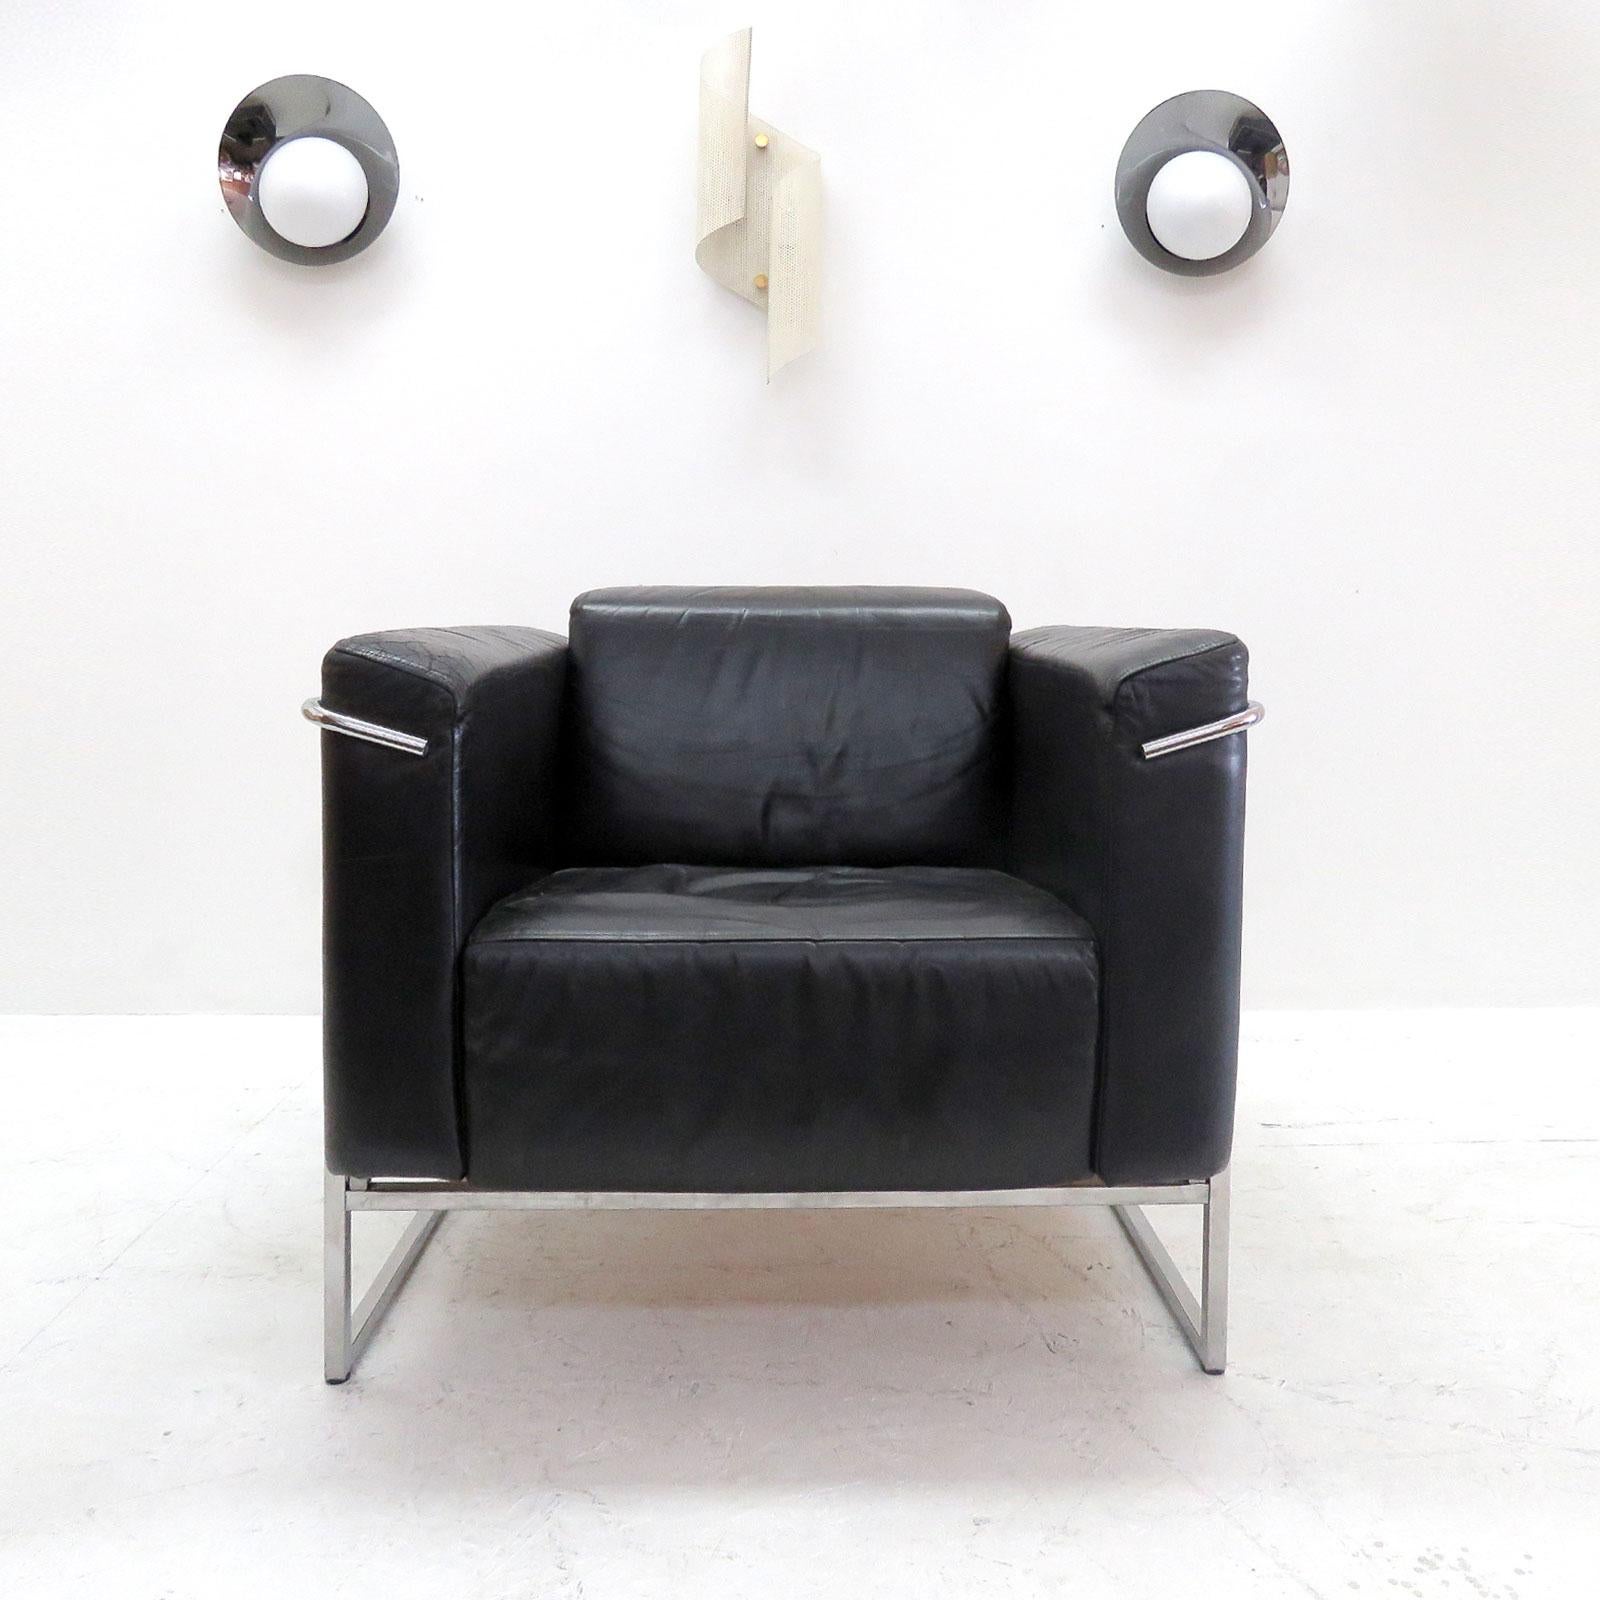 Superbe paire de chaises 'Classio, model 8283' en chrome et cuir noir par Asko, Finlande, conçues en 1982, design cubique similaire aux chaises de salon LC2 de Le Corbusier, marquées.